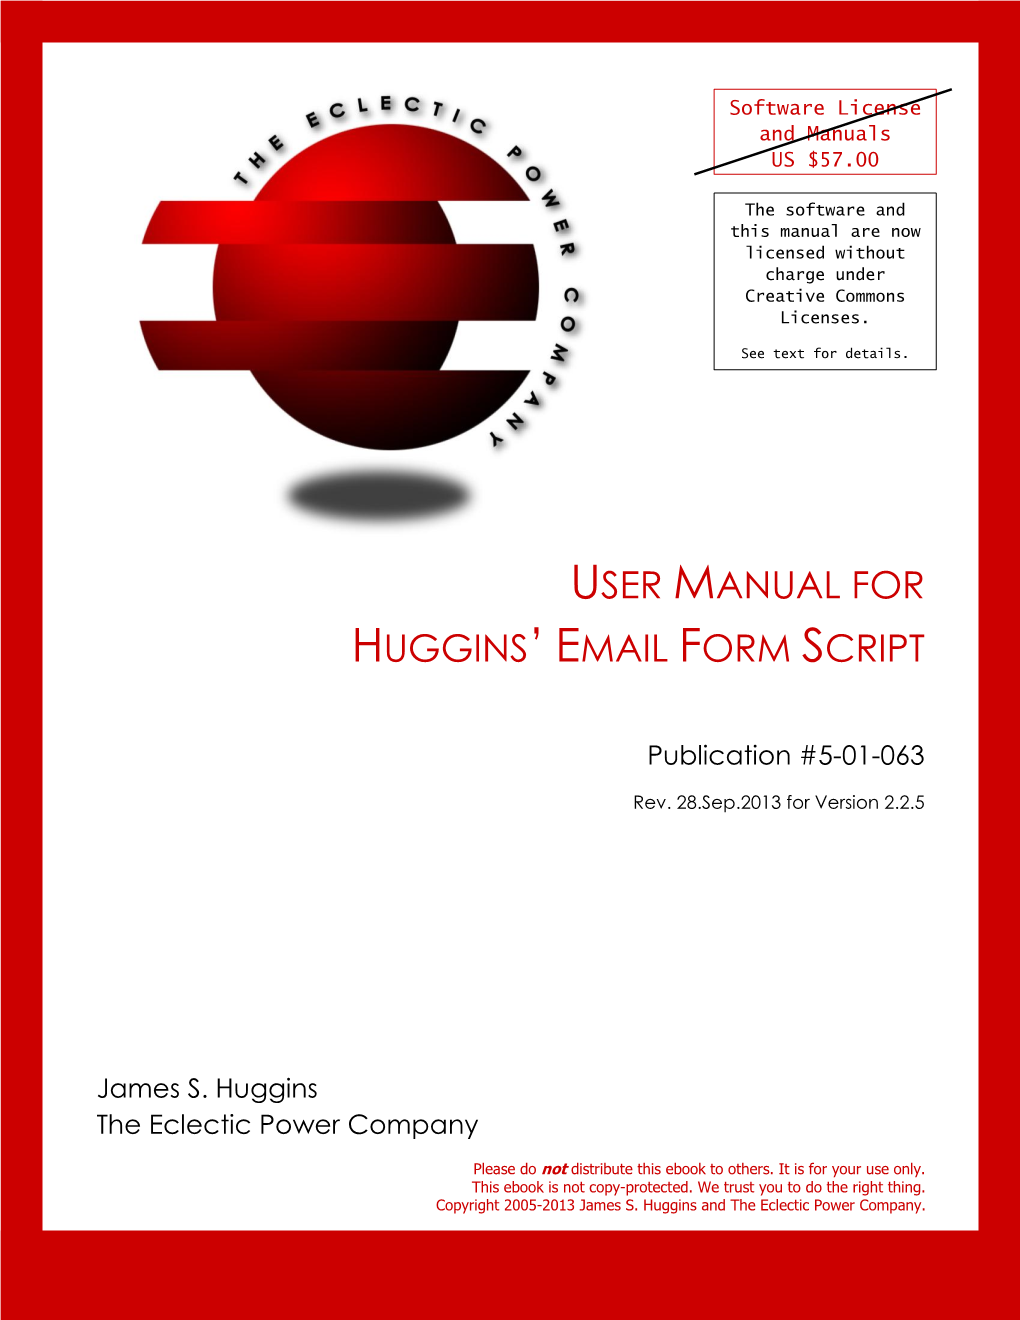 User Manual for Huggins’ Email Form Script